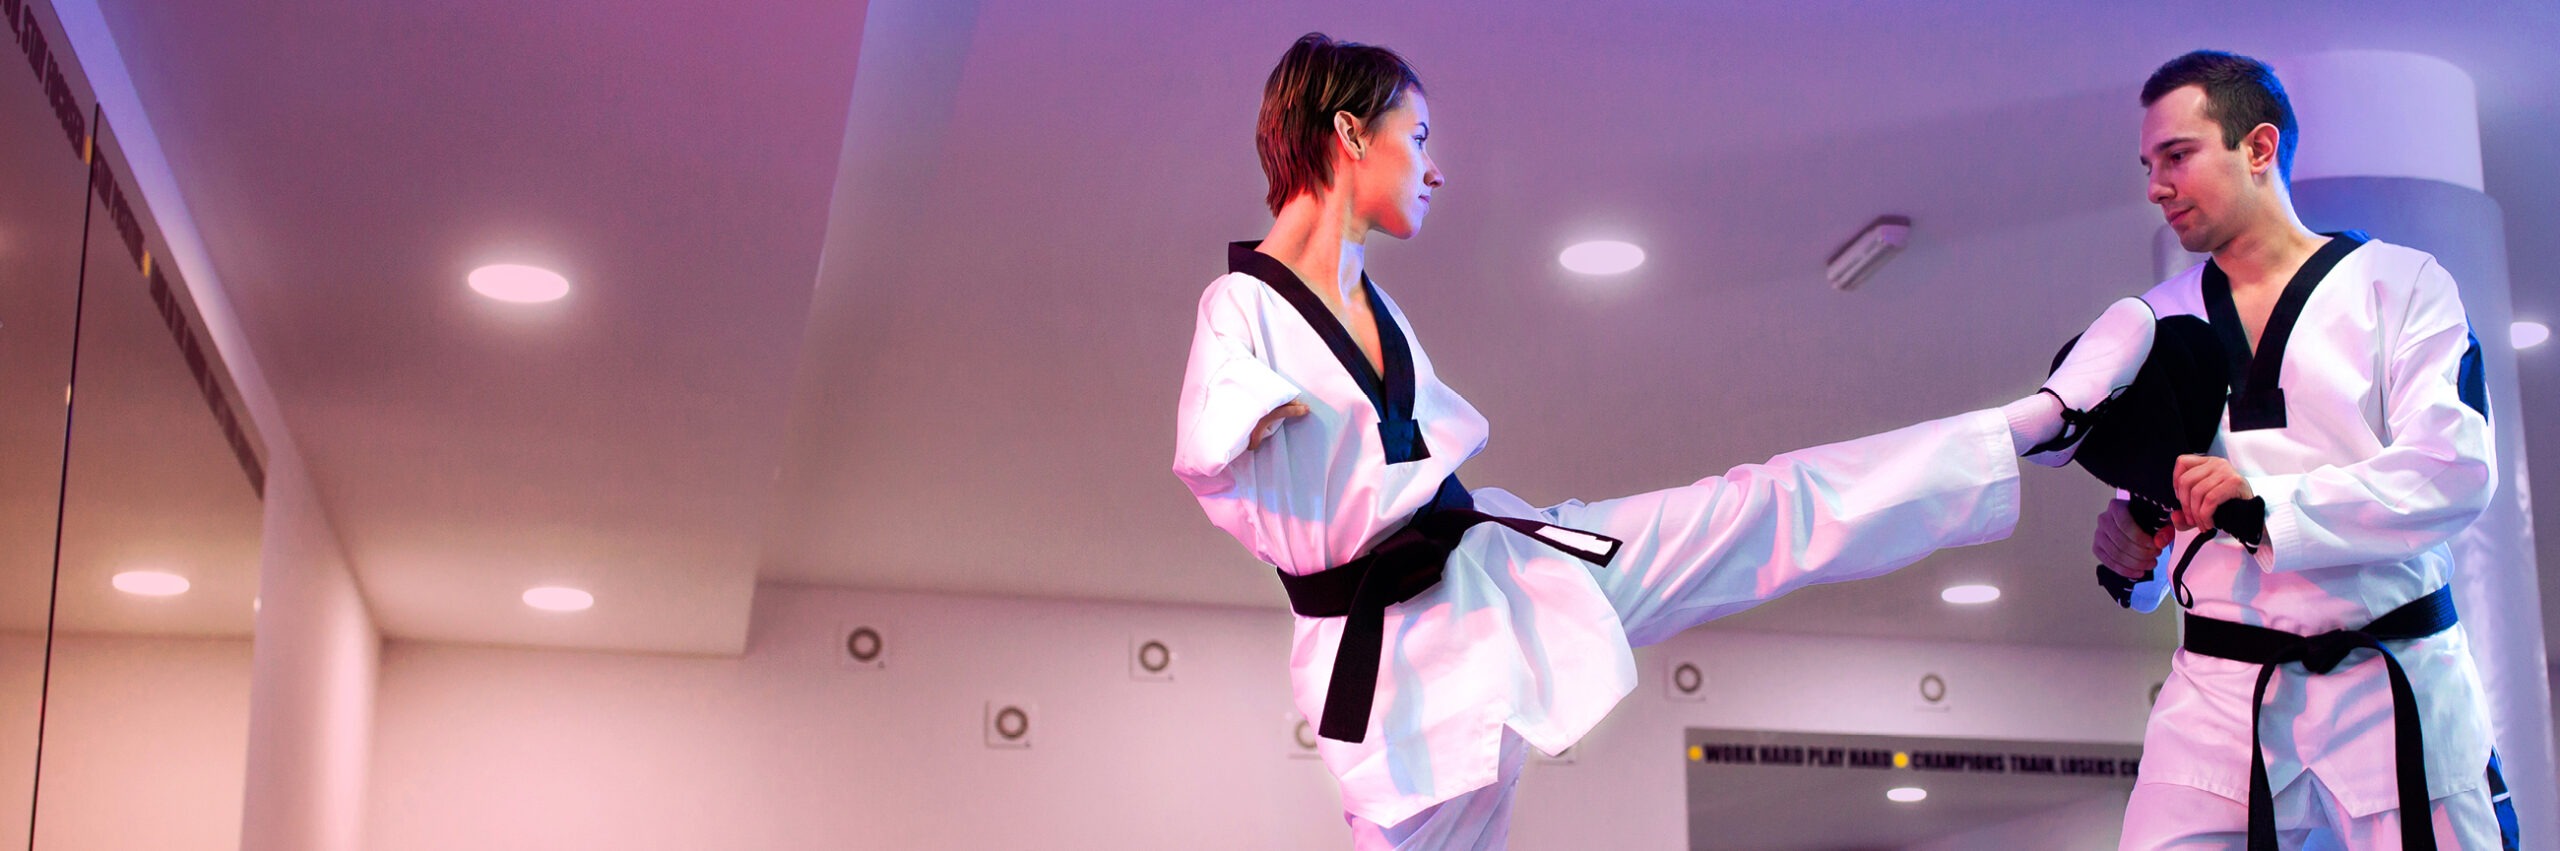 Lady with disability practicing taekwondo